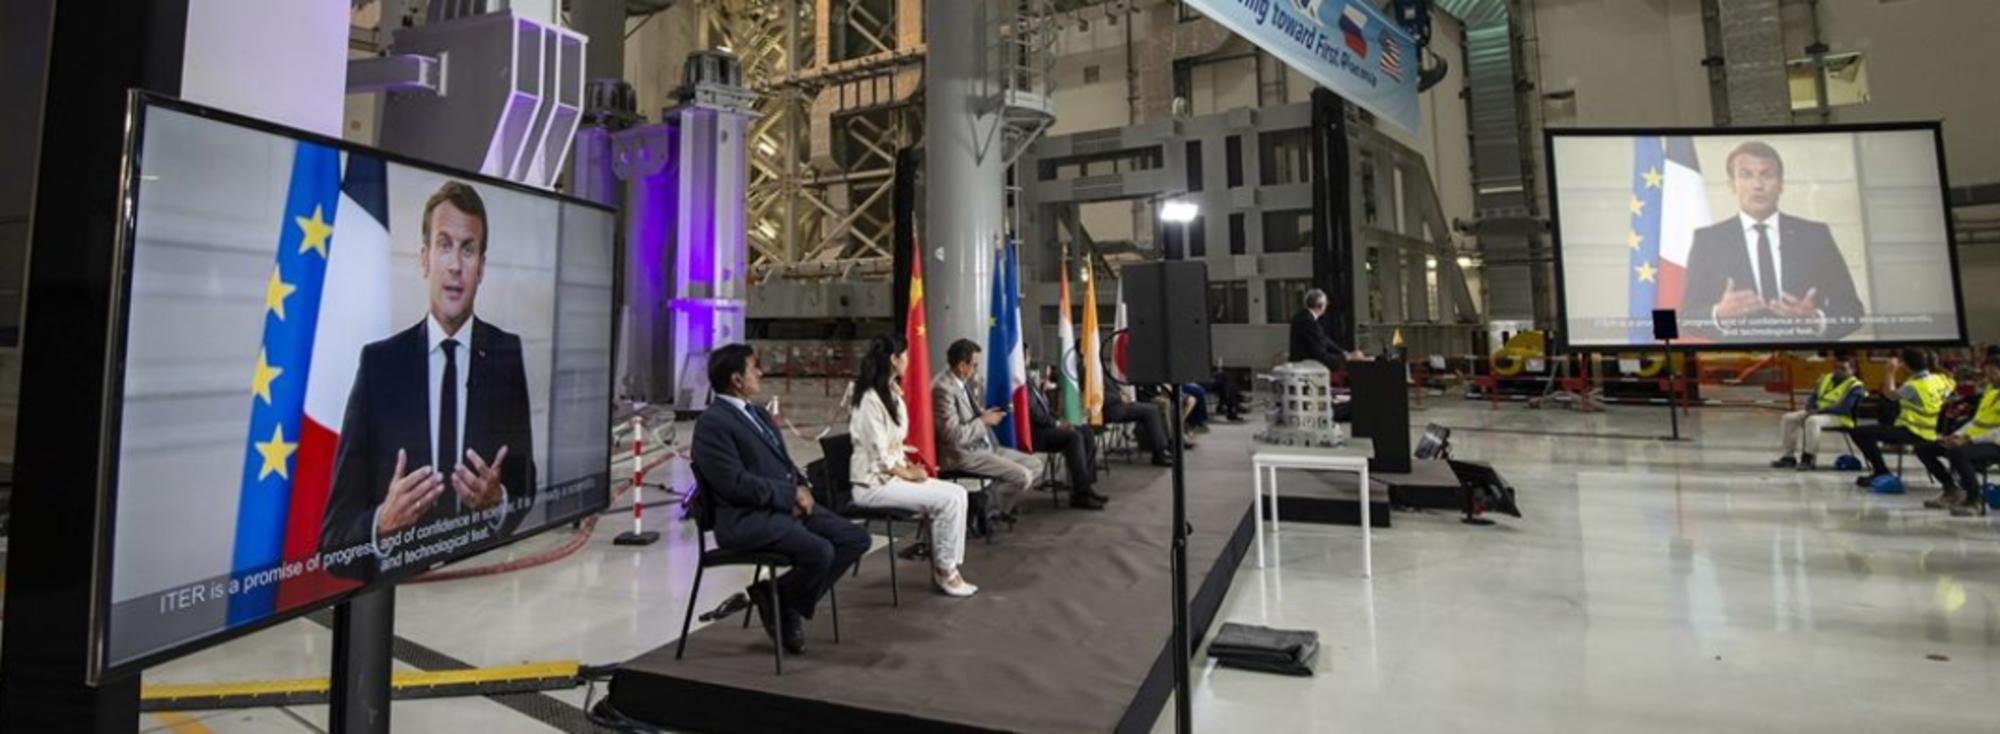 El presidente de Francia, Emmanuel Macron, envideoconferencia para apoyar el inicio del montaje de las piezas maestras del reactor de fusión ITER el 28 de julio de 2020. Fuente: Sortir du nucléaire 